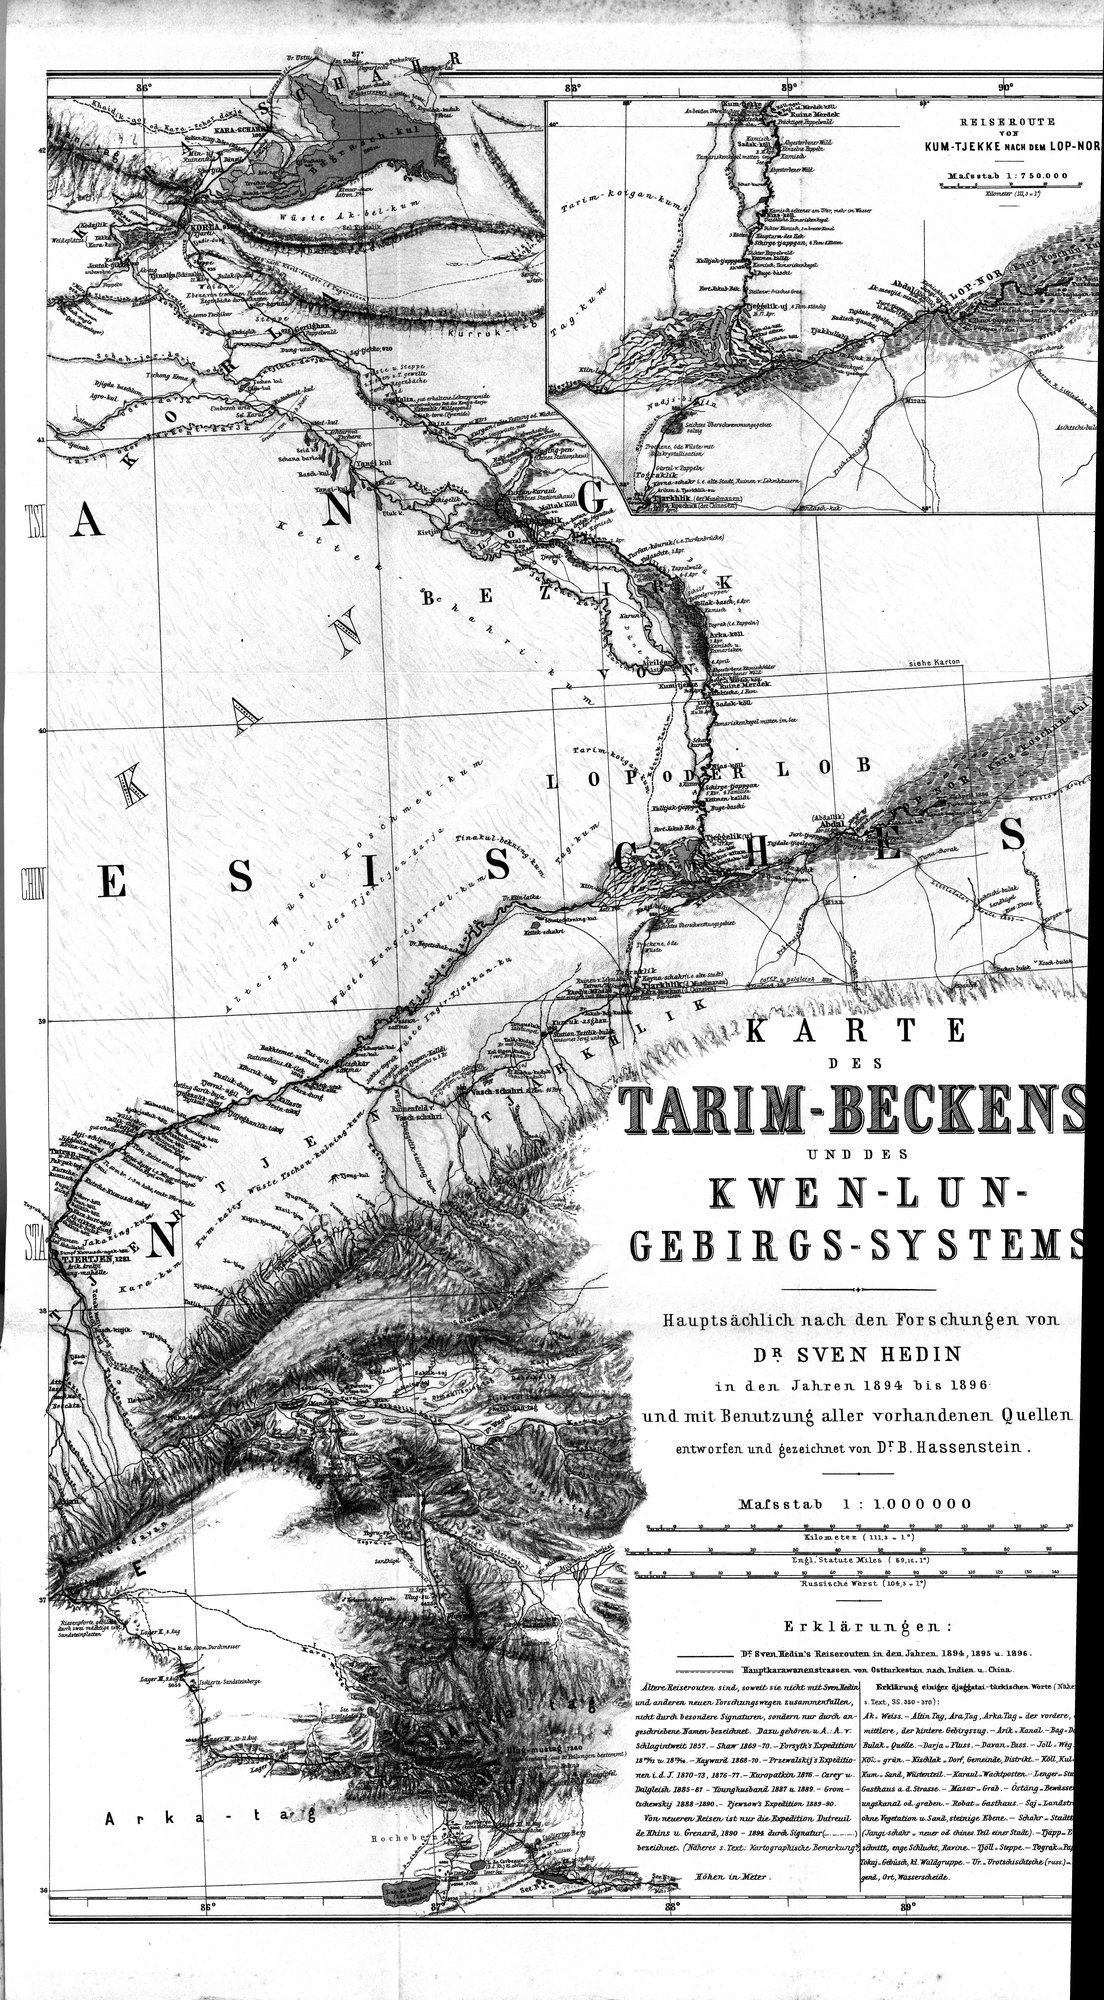 Die Geographische-Wissenschaftlichen Ergebnisse meiner Reisen in Zentralasien, 1894-1897 : vol.1 / Page 417 (Grayscale High Resolution Image)